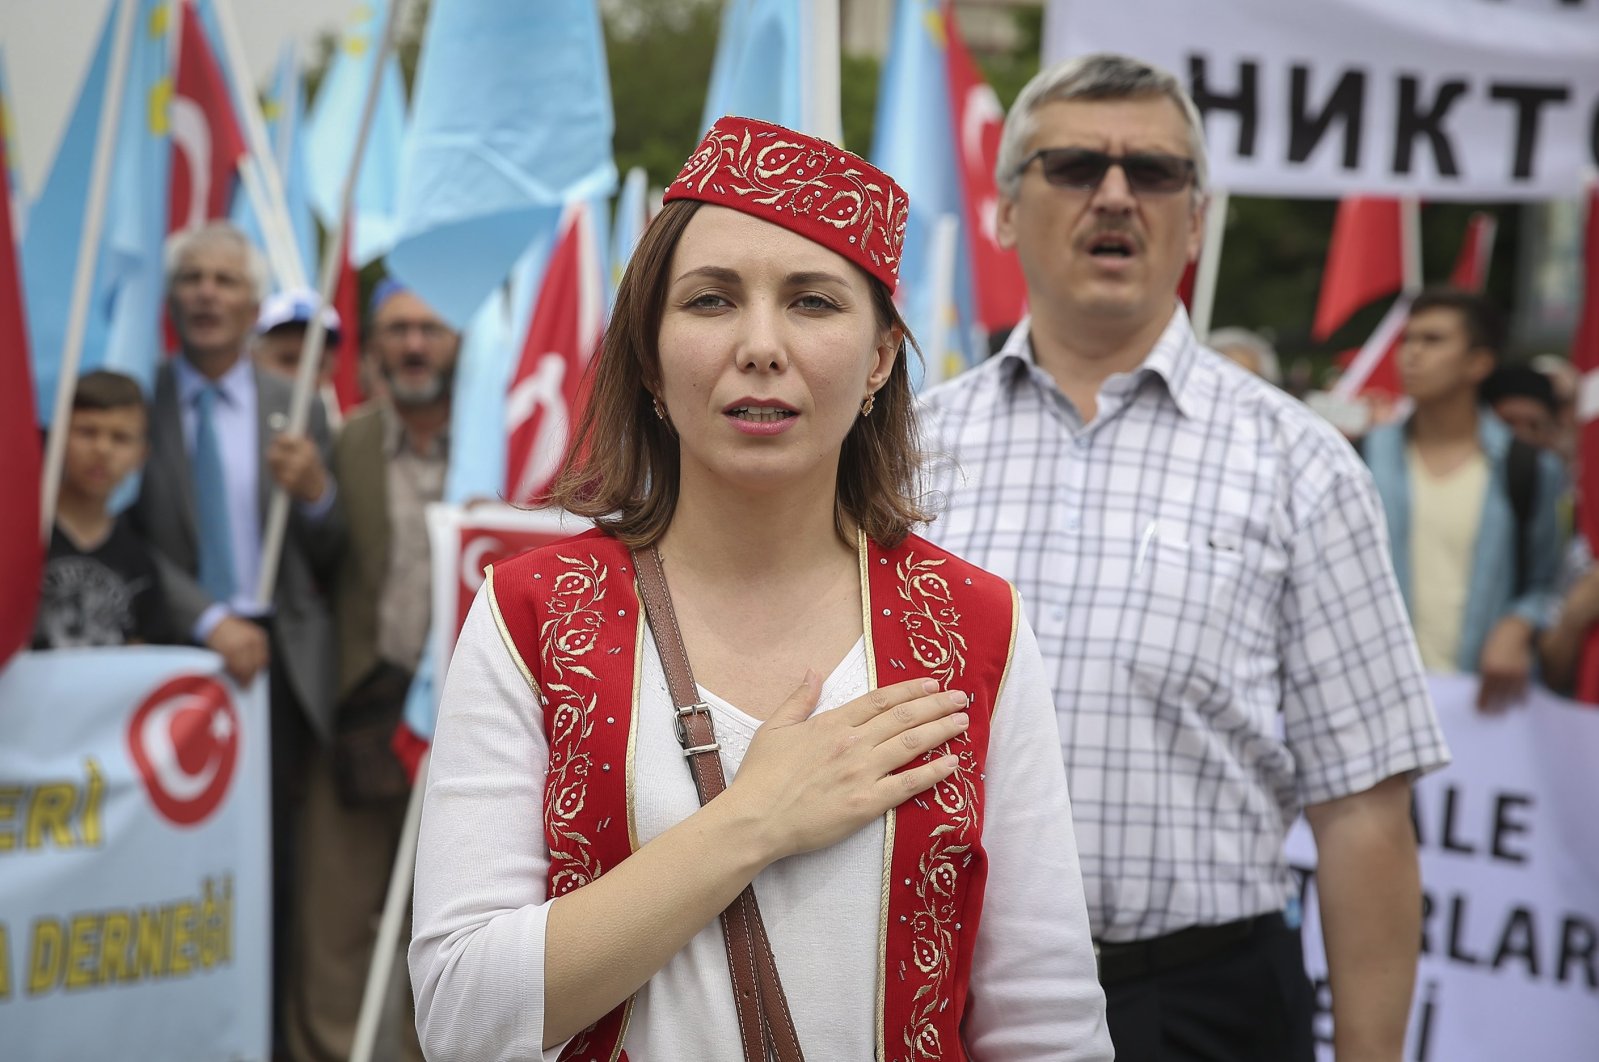 Peringatan ke-79 pengasingan Tatar Krimea membangkitkan kenangan yang masih menyakitkan